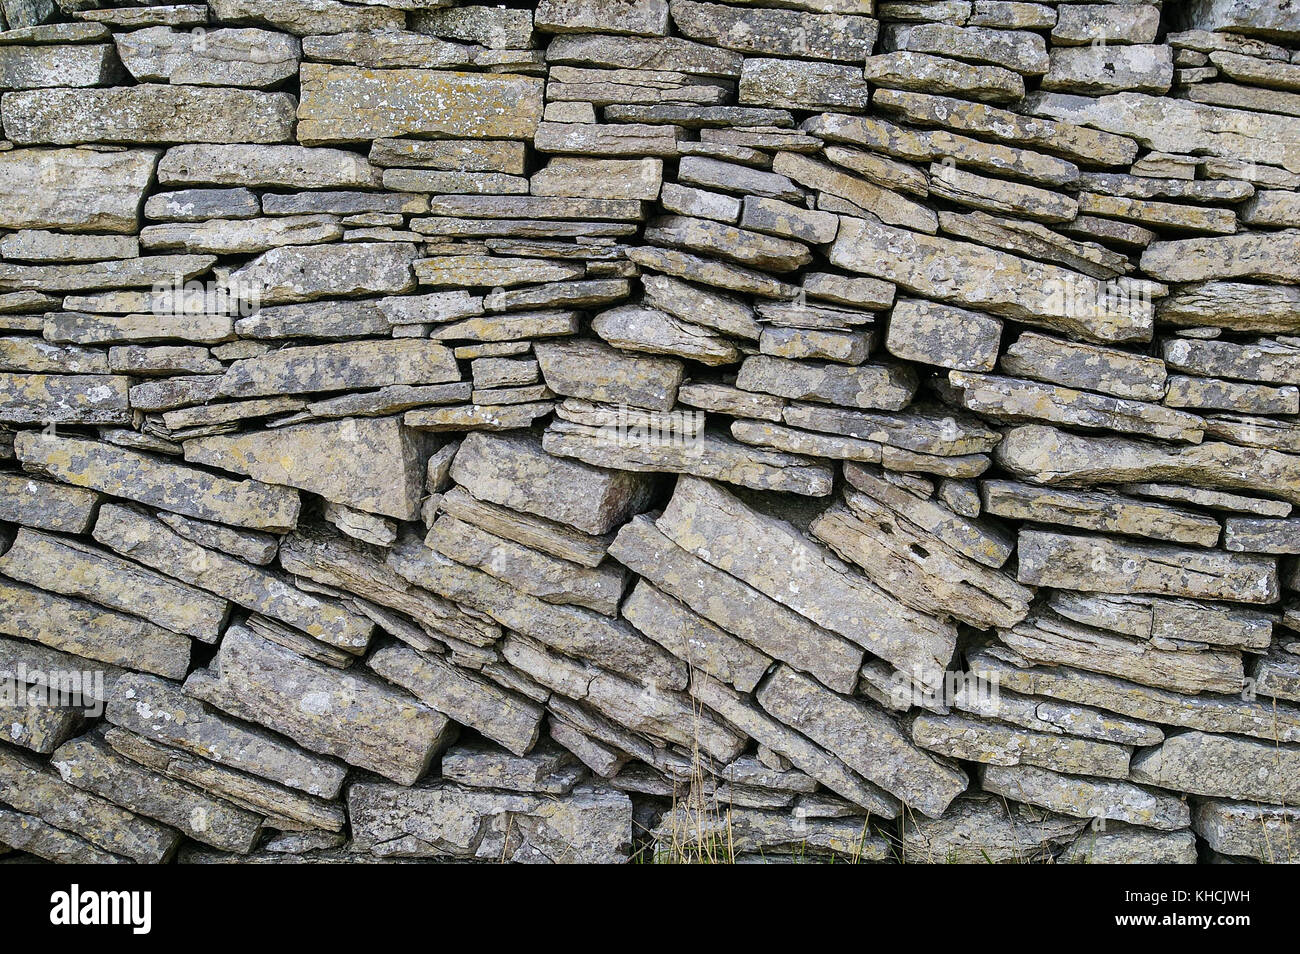 Muro di pietra a secco al Purbeck, Dorset - omaggio all'artigianato di costruire muri che emanano robustezza e spirito rurale Foto Stock